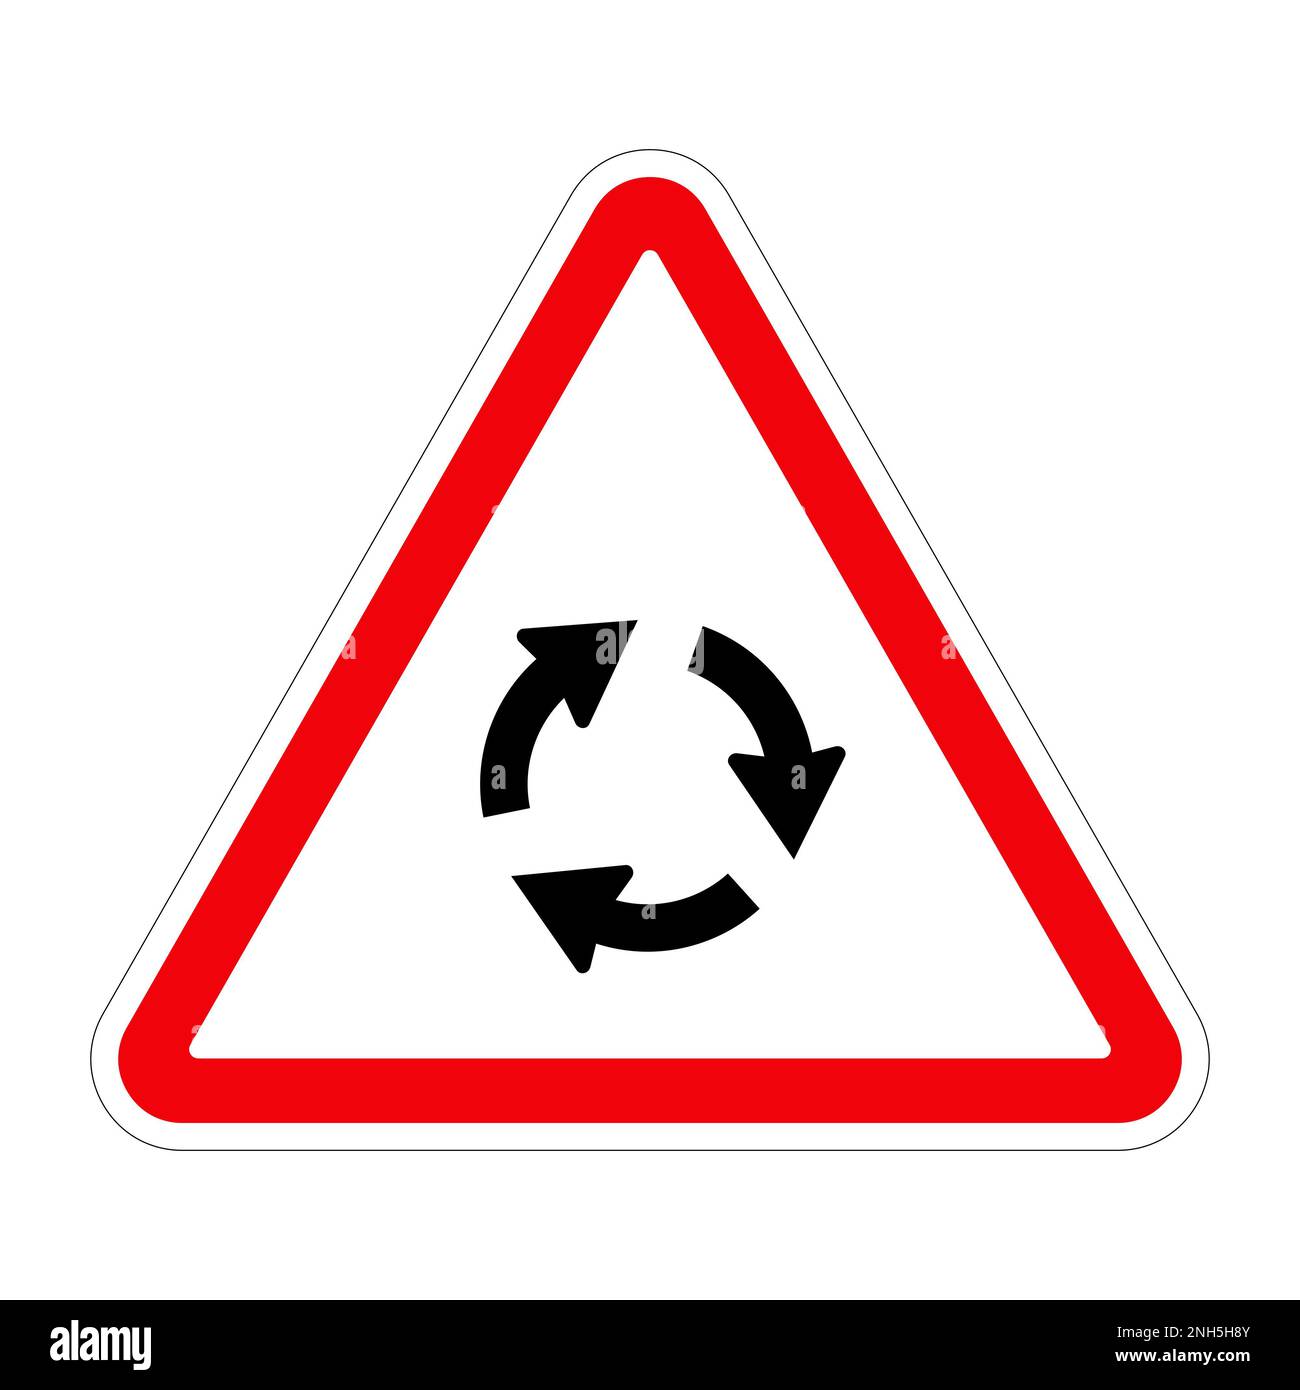 KREISVERKEHR mit Verkehrszeichen auf weißem Hintergrund, Illustration Stockfoto